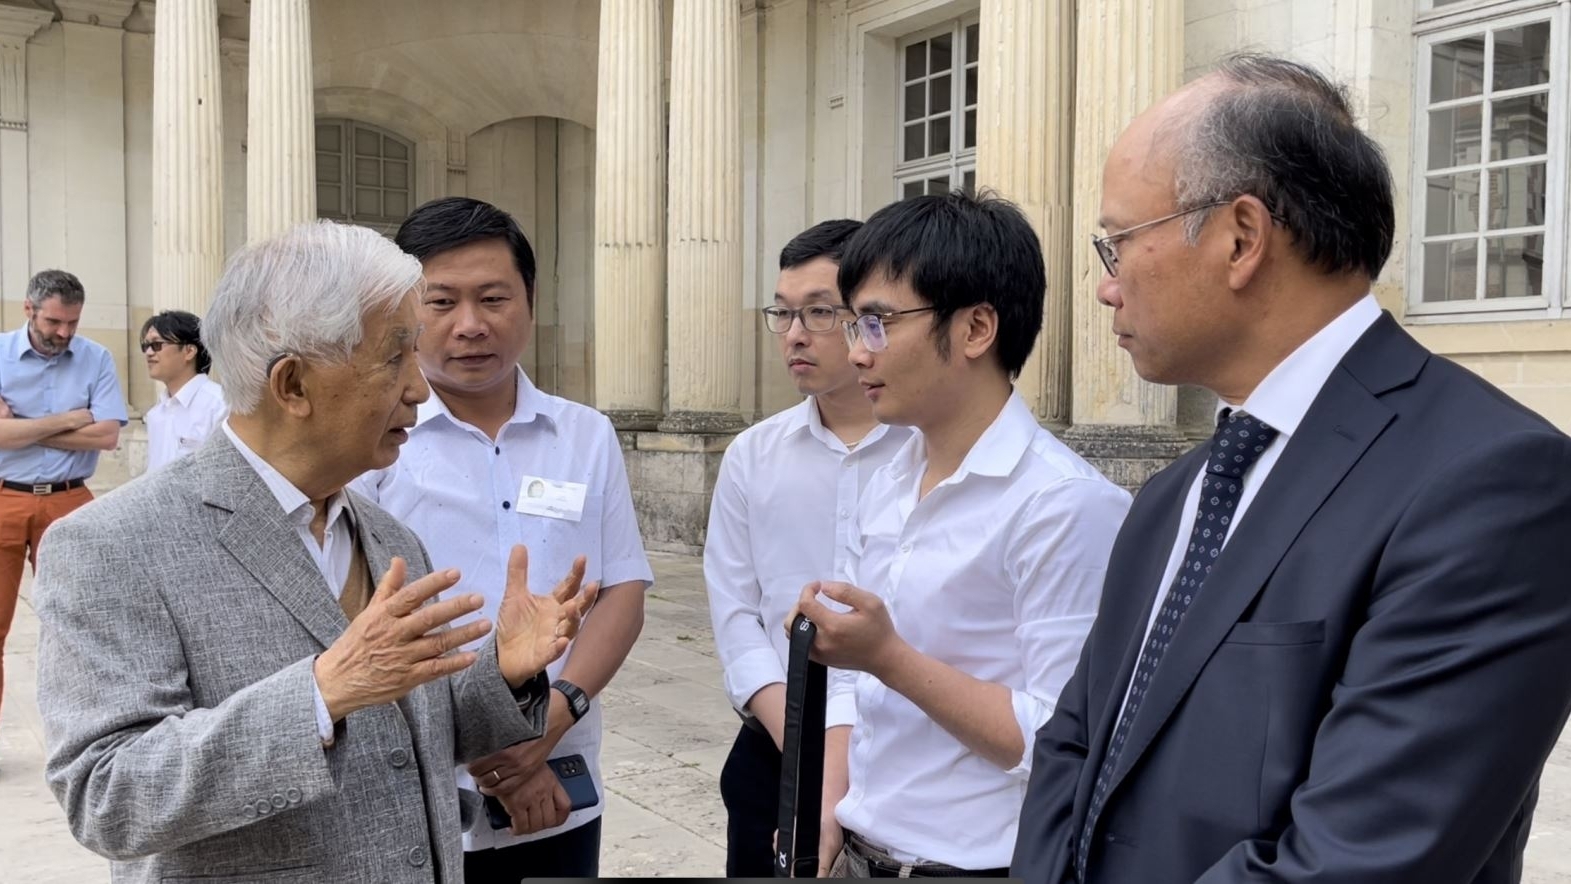 瓦莱奖学金为越南留学生发挥在科学技术领域的才华创造有利条件